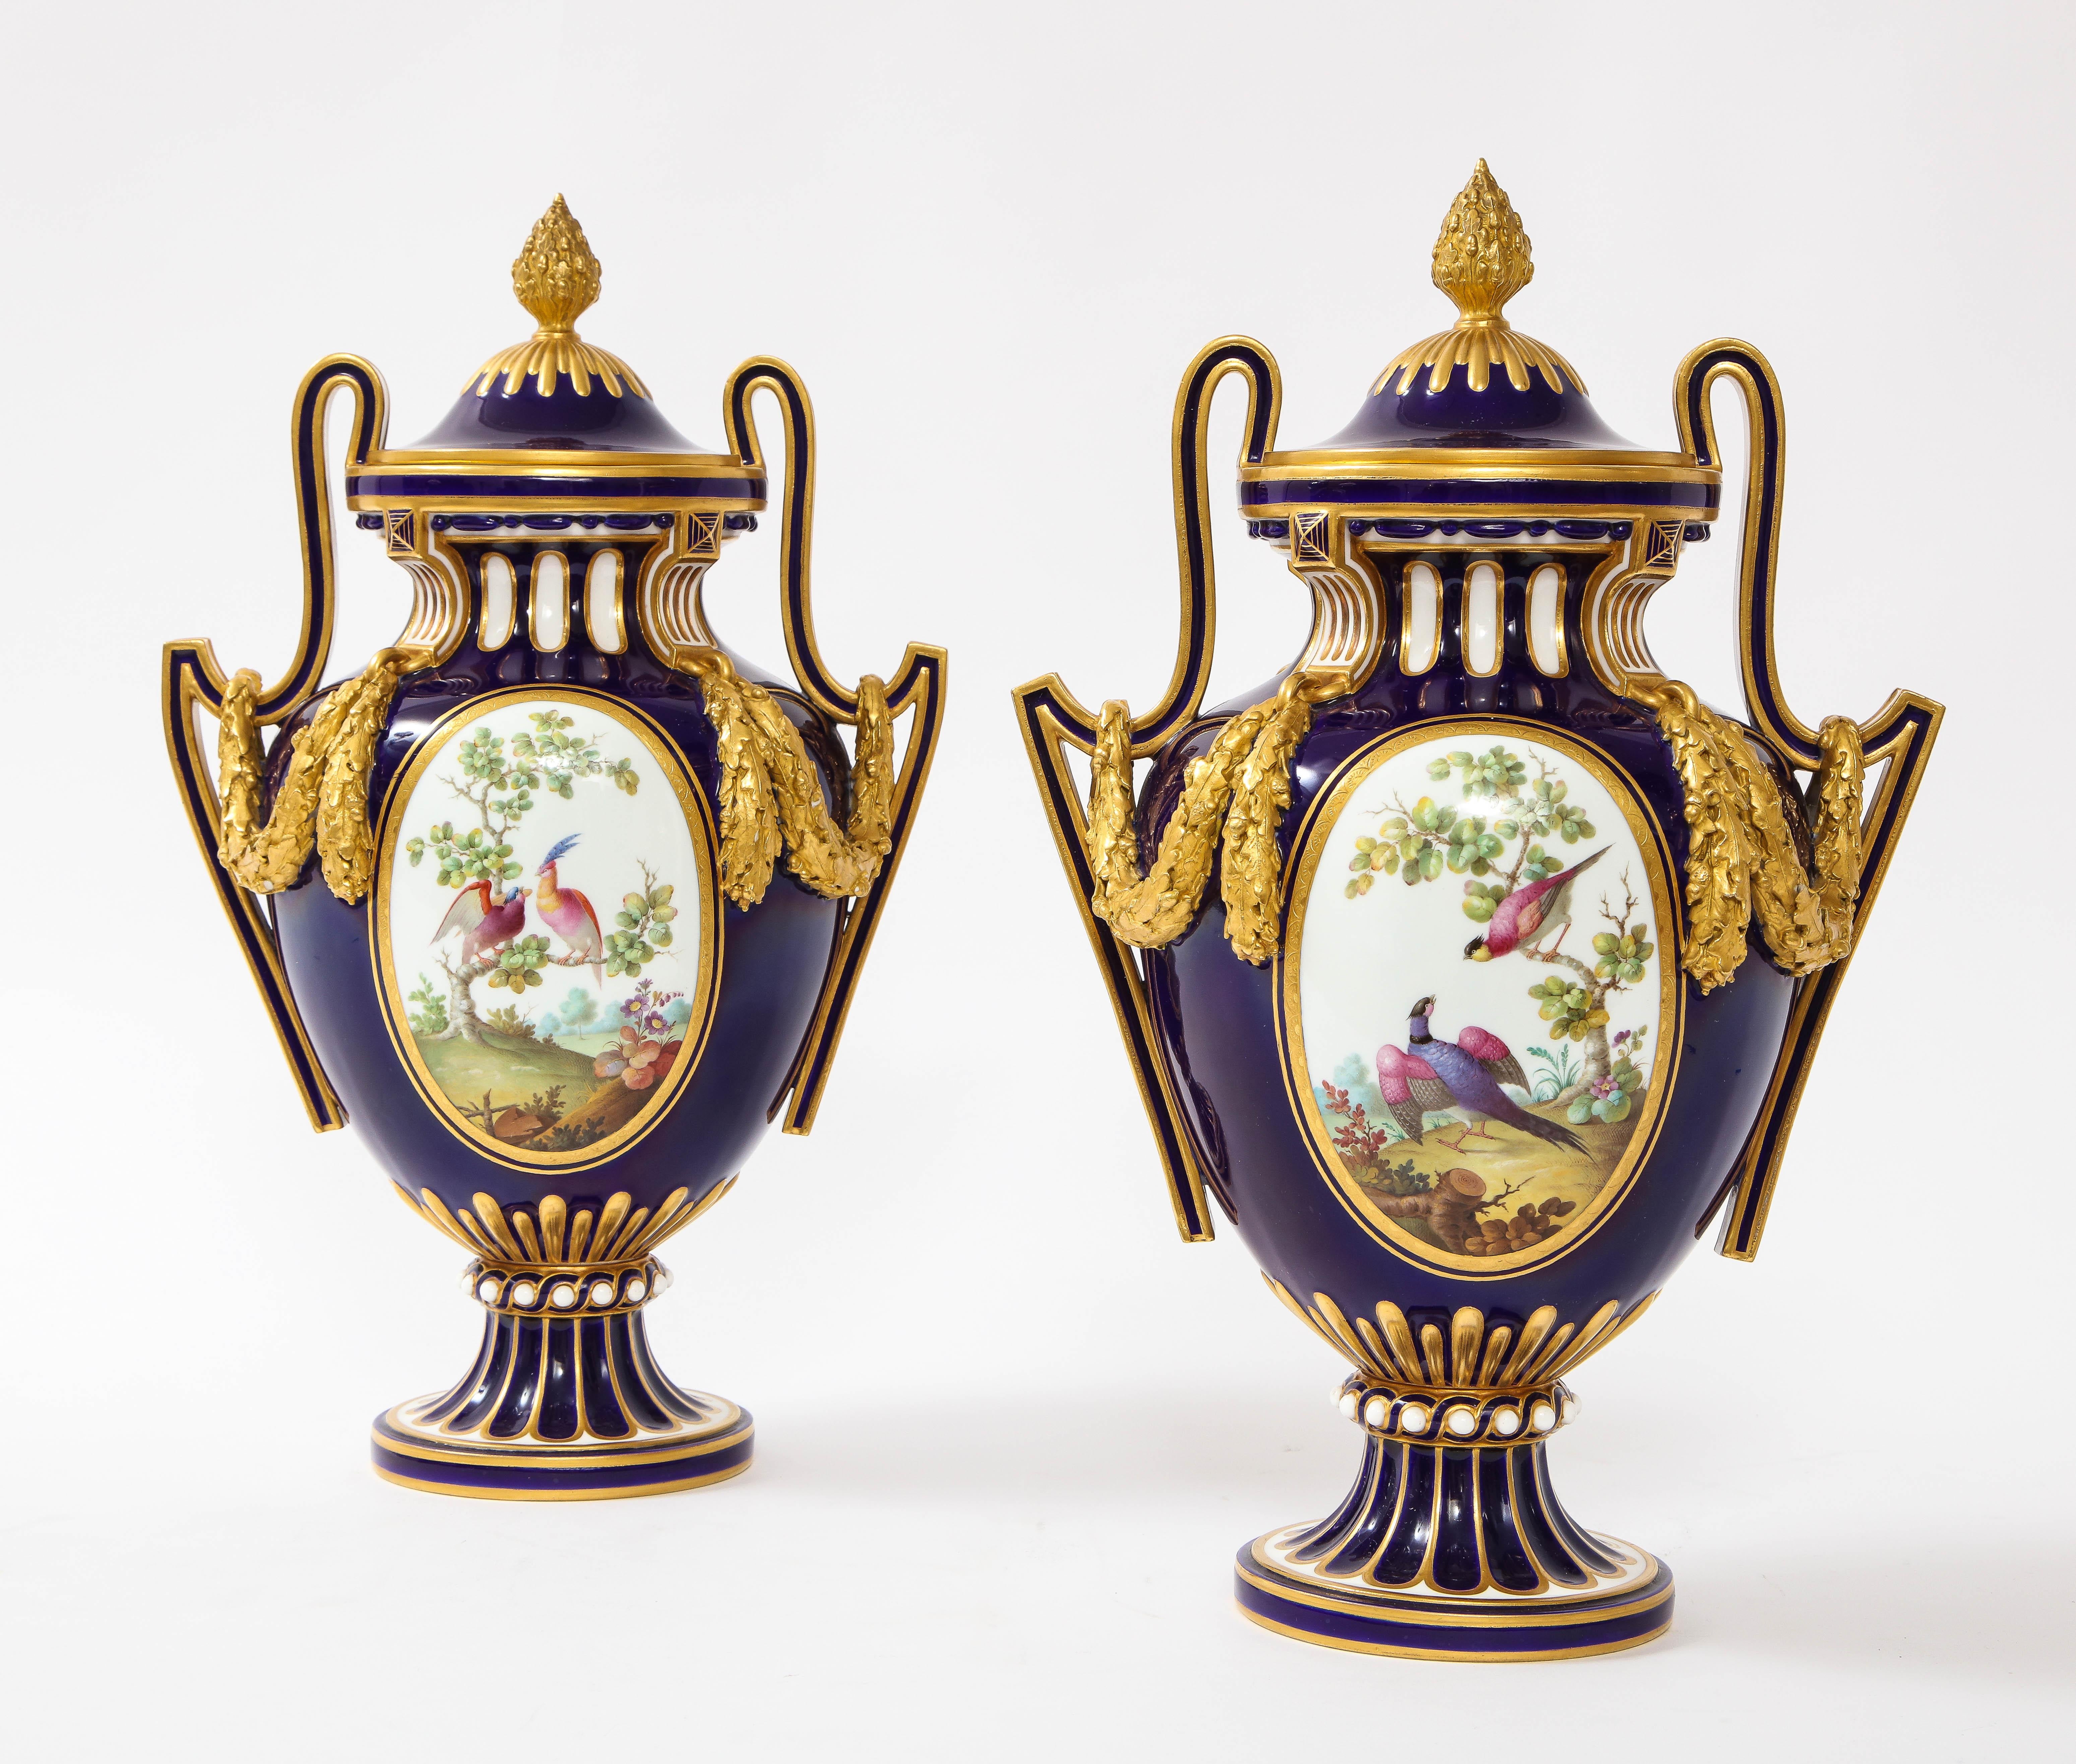 Une fantastique et belle paire de vases couverts de forme ovale en porcelaine anglaise de style Louis XVI, de style Sèvres, à fond bleu nouveau, peints et dorés à la main. Ces vases Mintons sont vraiment remarquables. De forme ovale avec un